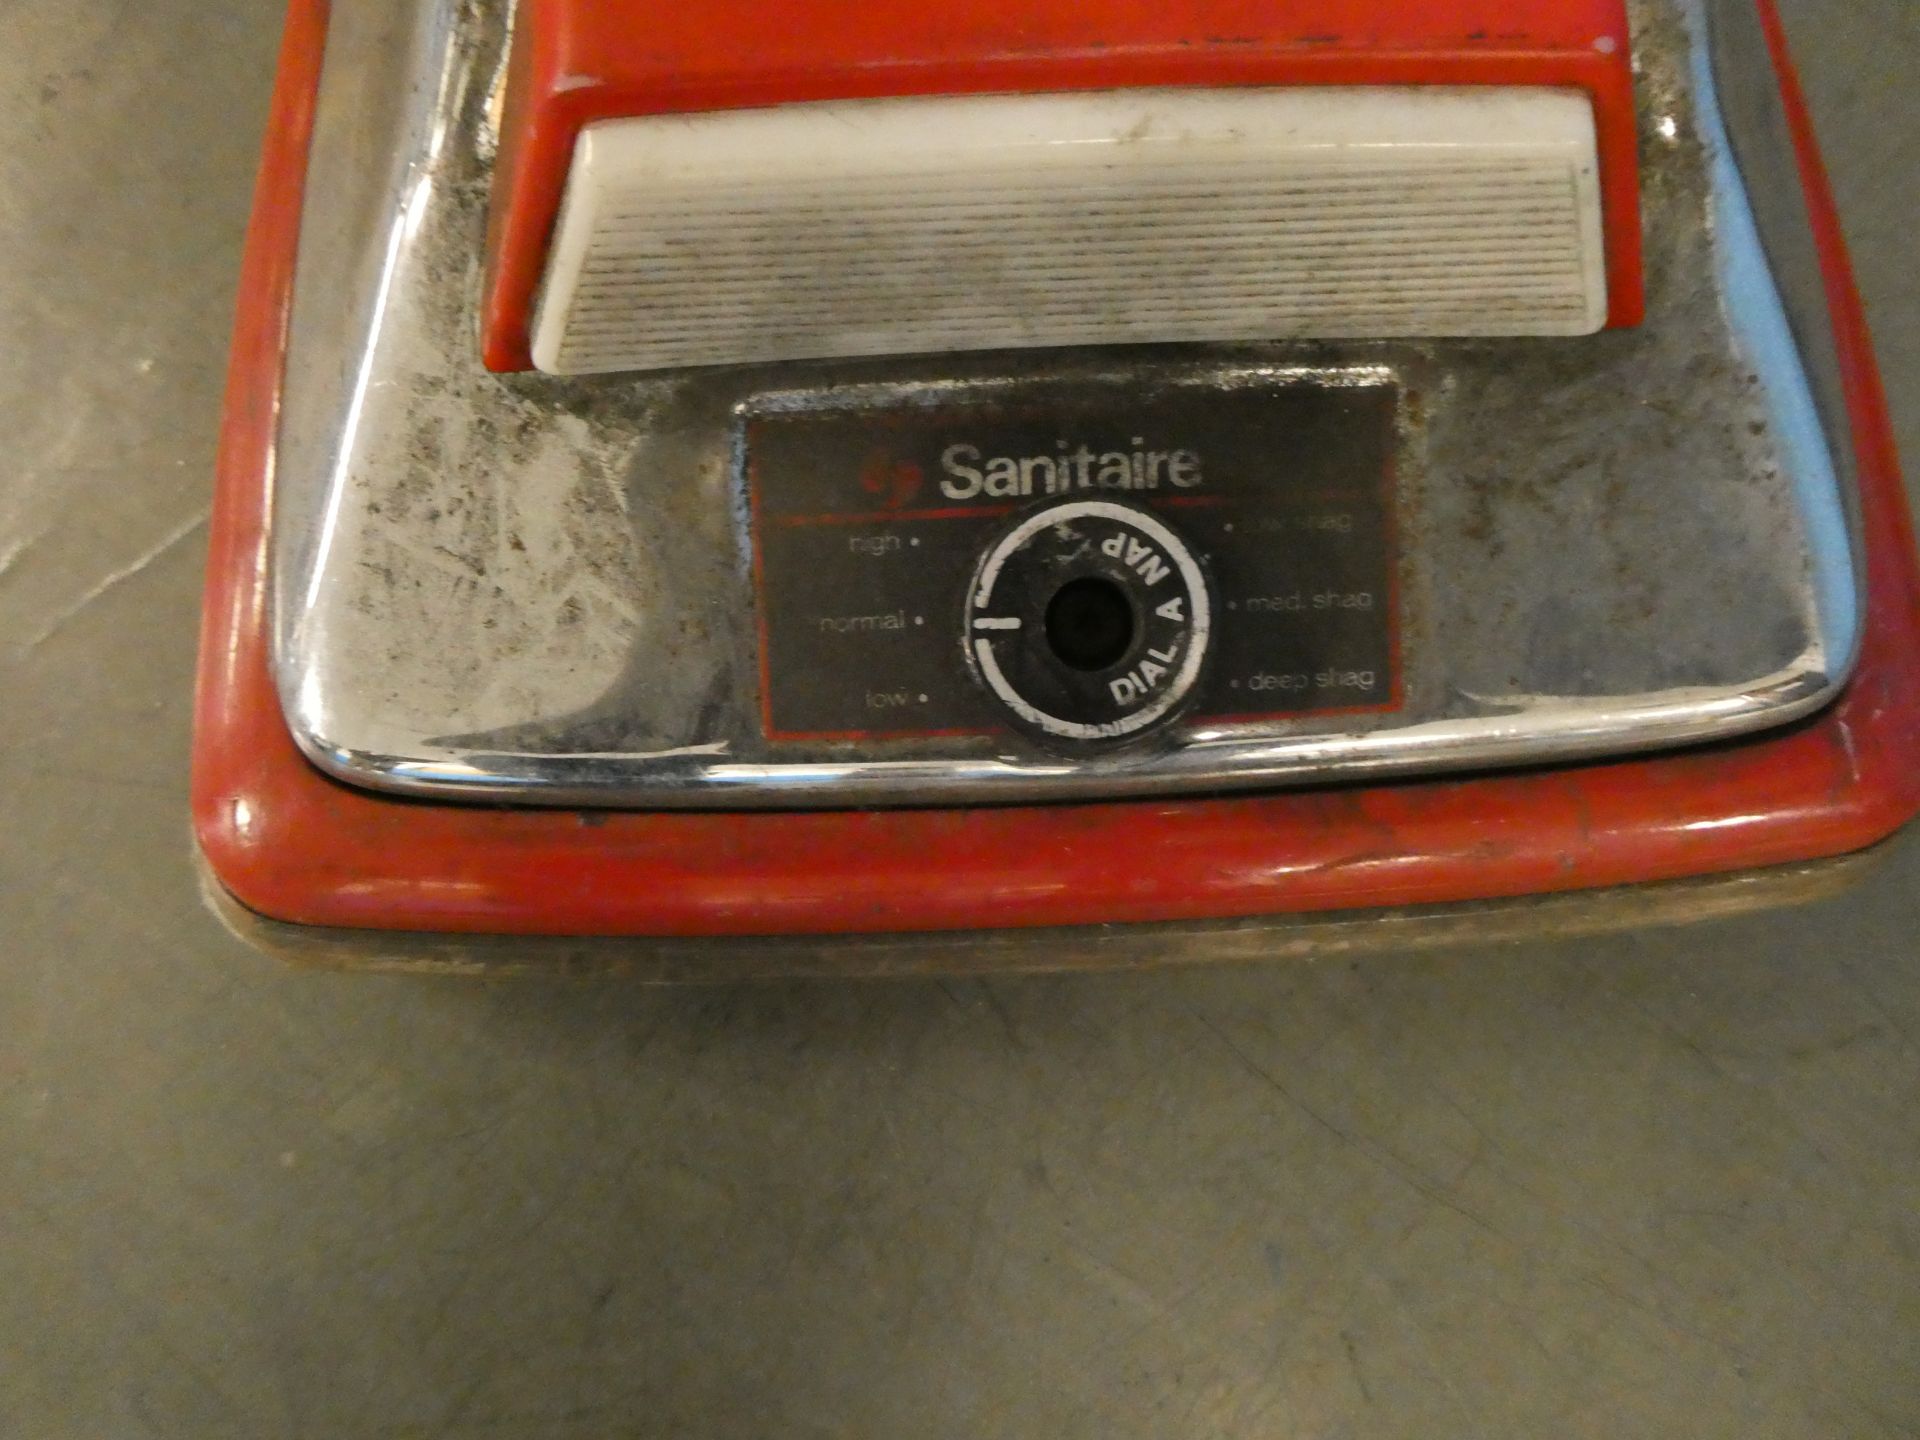 Sanitaire Vacuum - Image 2 of 2